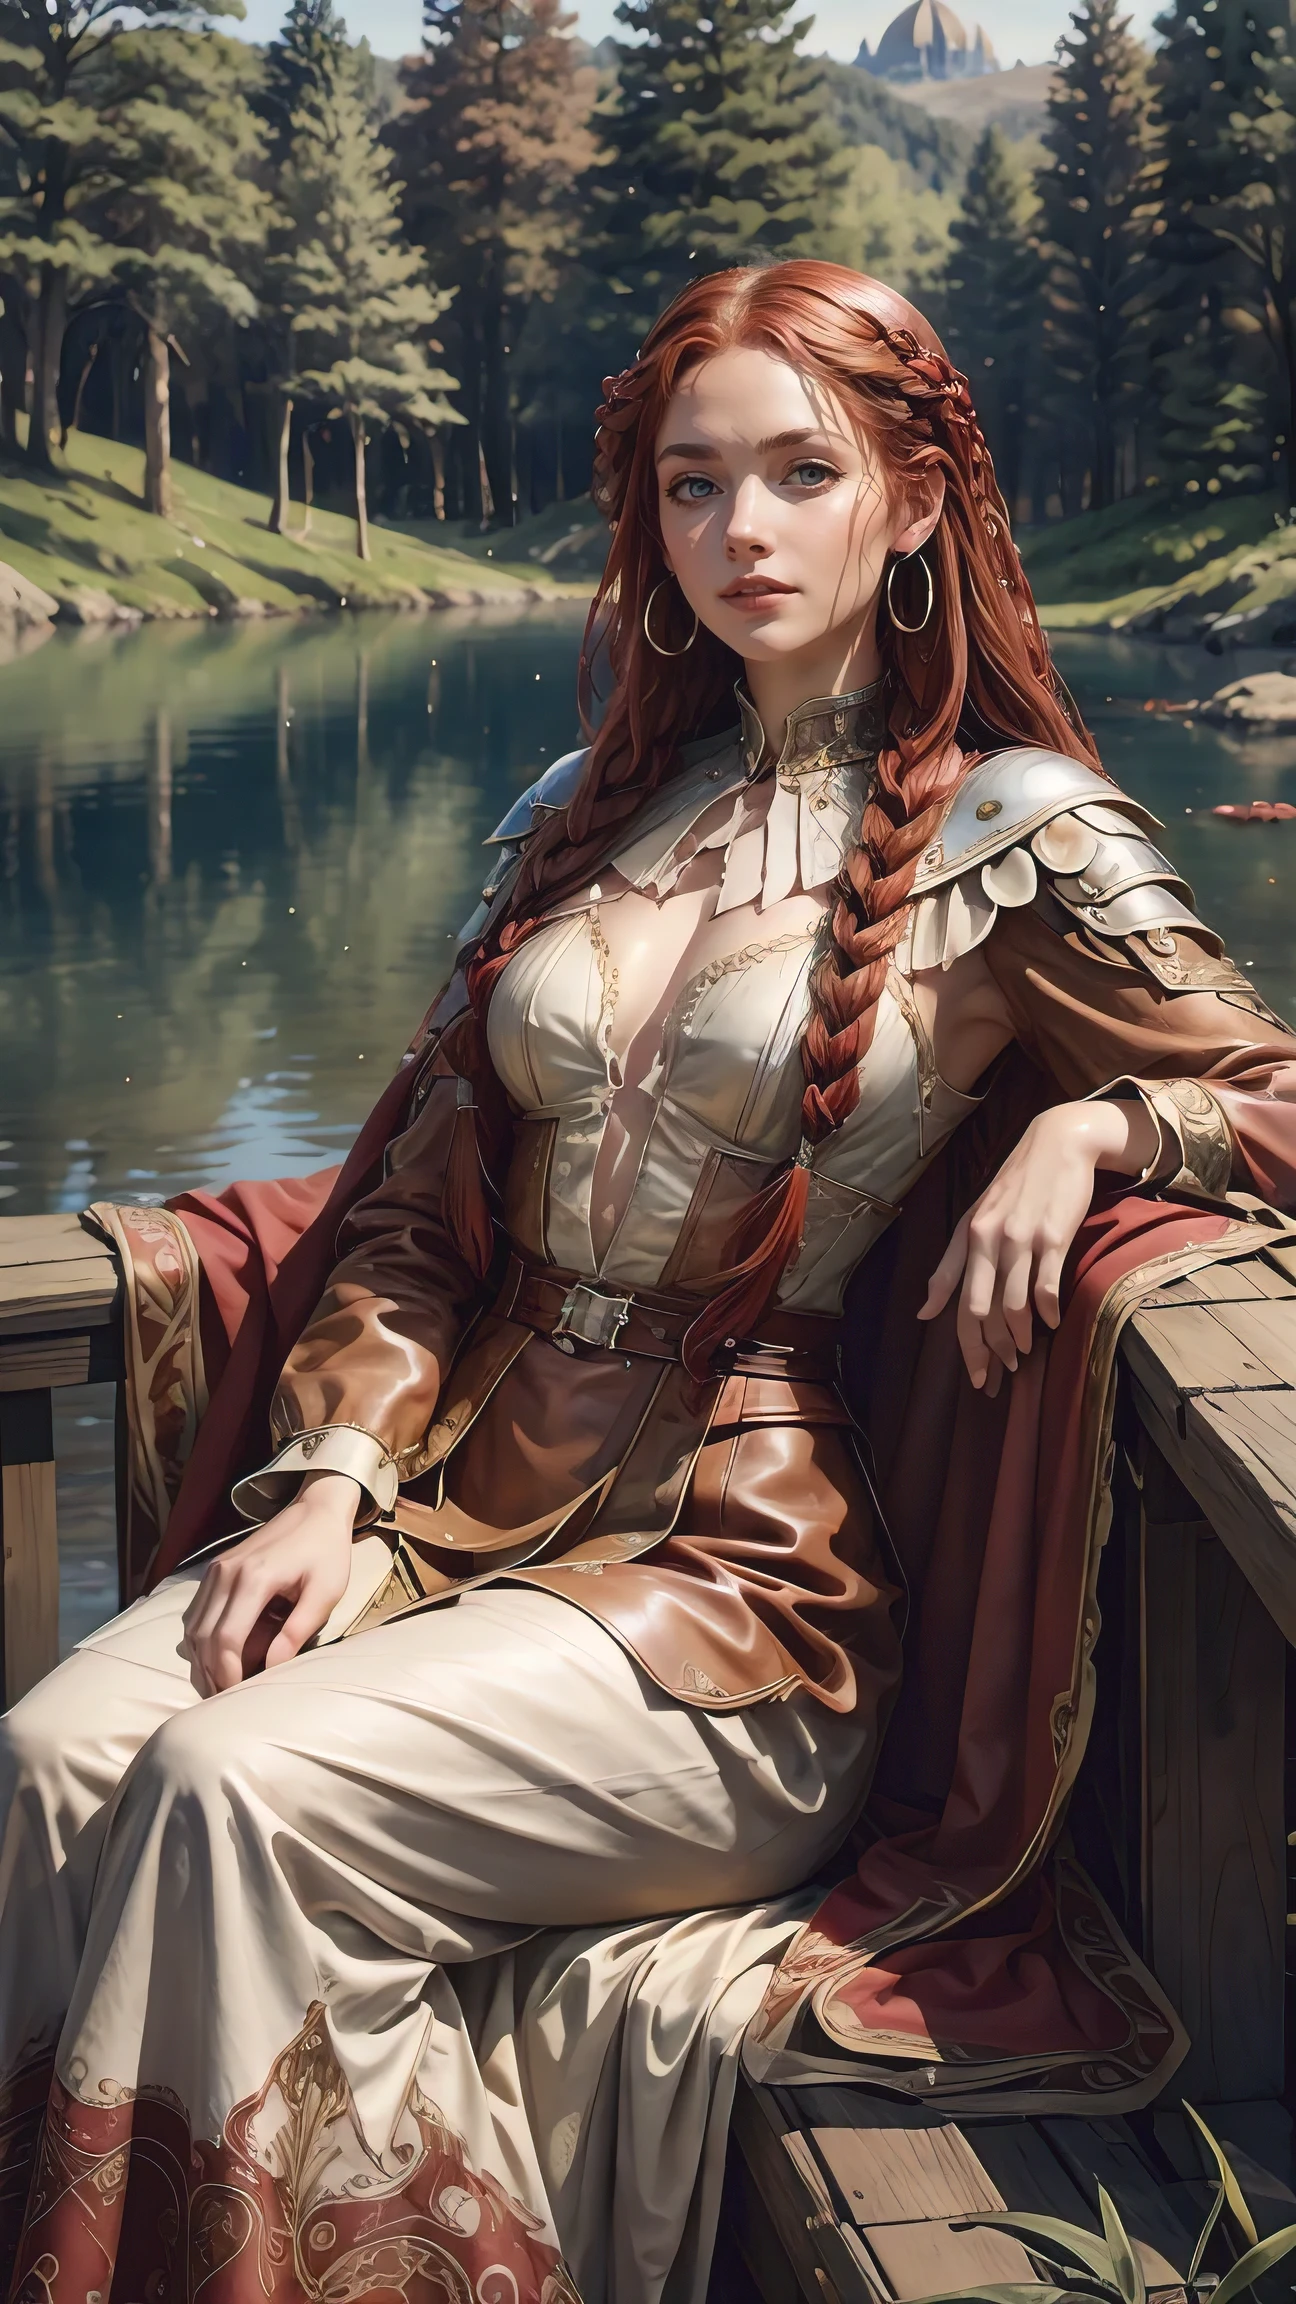 Красивая женщина, сидящая возле озера с красными косами, в стиле Джессики Дроссин, Венди мошенничество, темно-белый и коричневый, ivanovich pimenov, подробные черты лица, фарфор, применение небольшого количества магии огня, кожаный костюм воина, 15 век